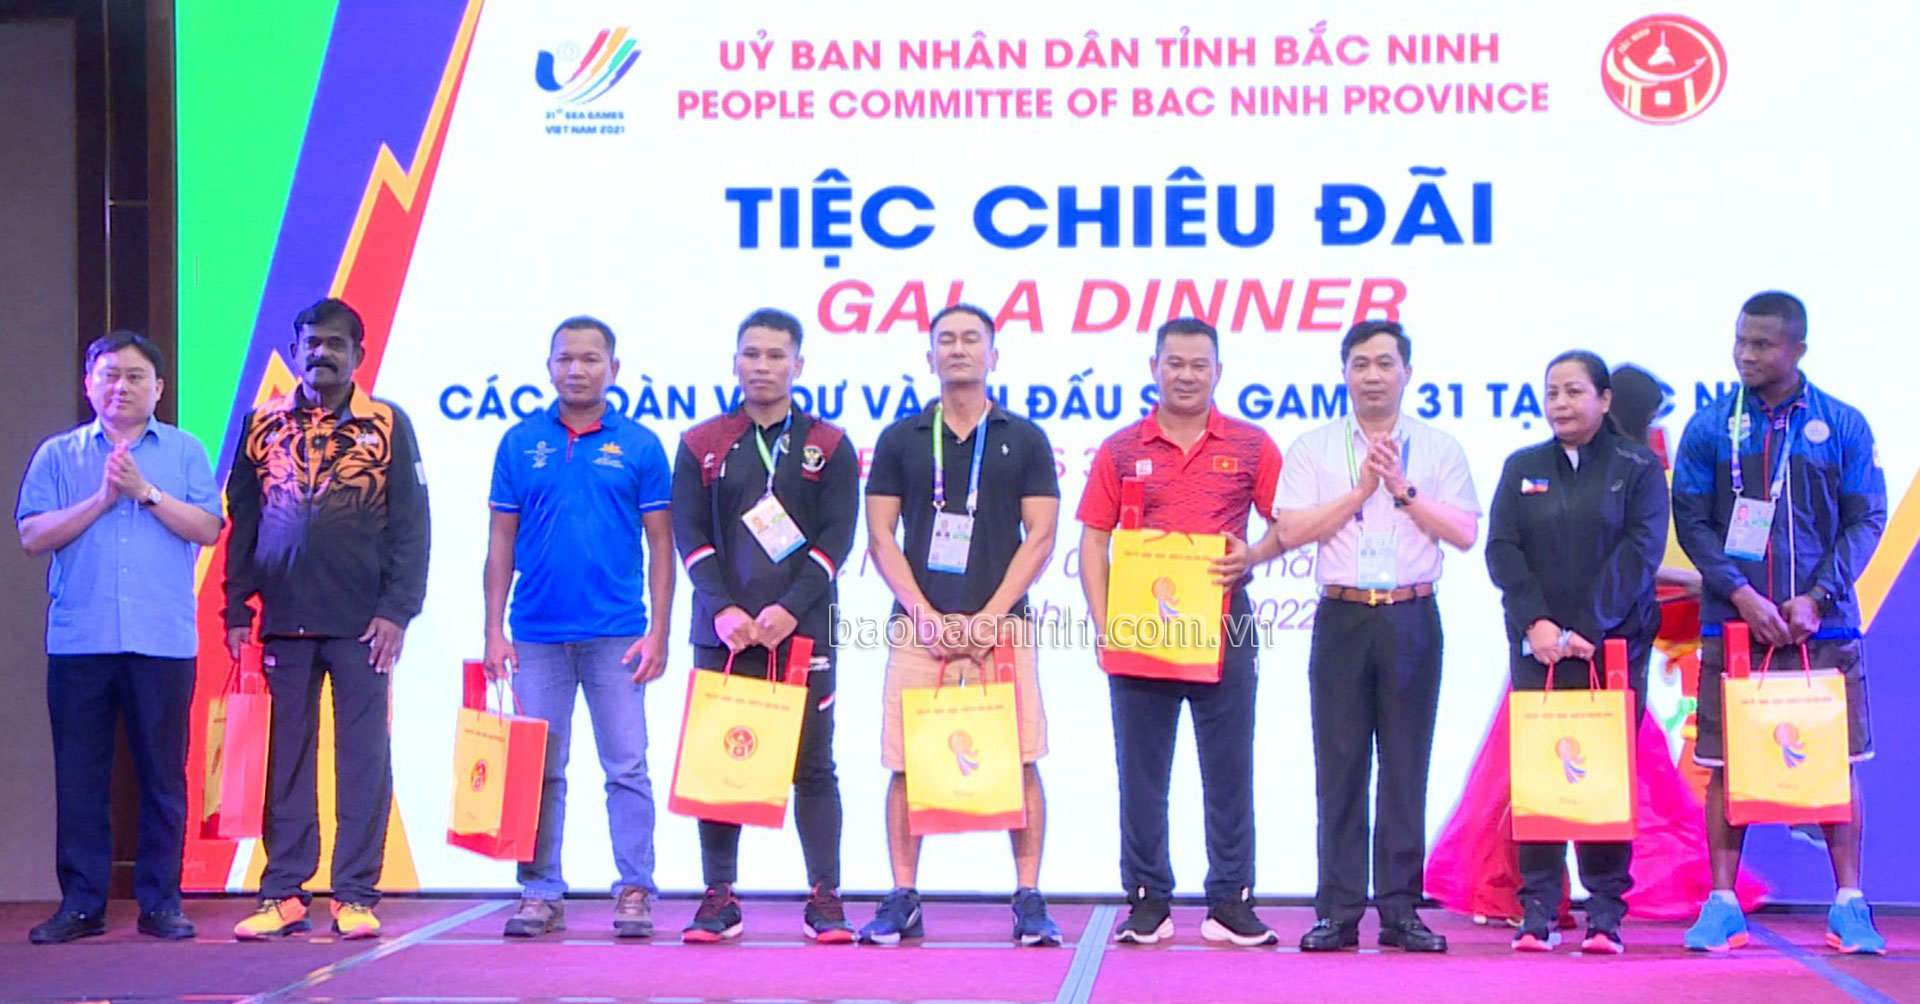 Các đoàn tham dự SEA Games 31 tại Bắc Ninh được đi du lịch miễn phí - Ảnh 2